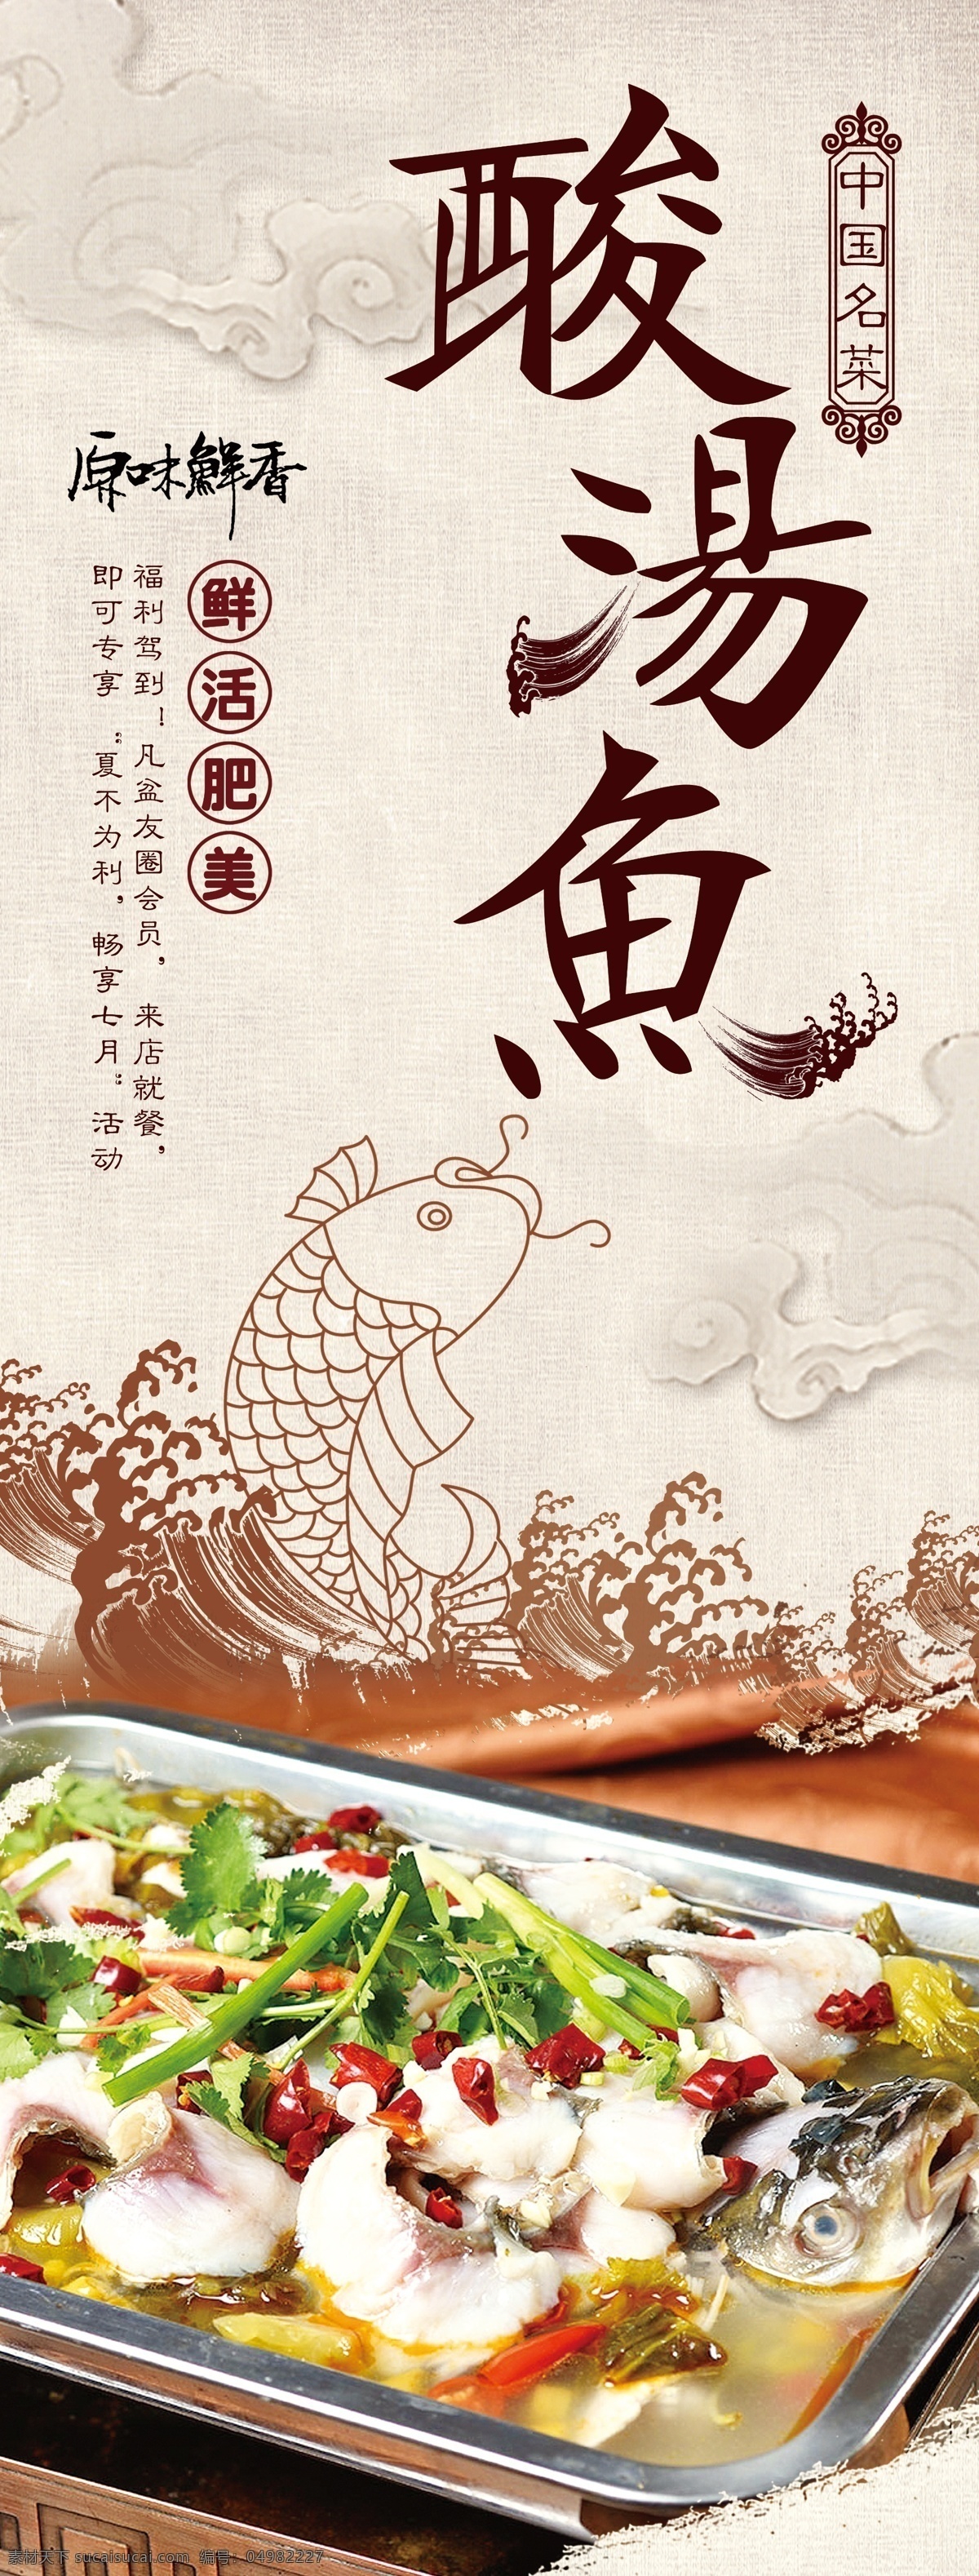 酸 汤 鱼 美食 活动 宣传海报 酸汤鱼 宣传 海报 餐饮美食 类